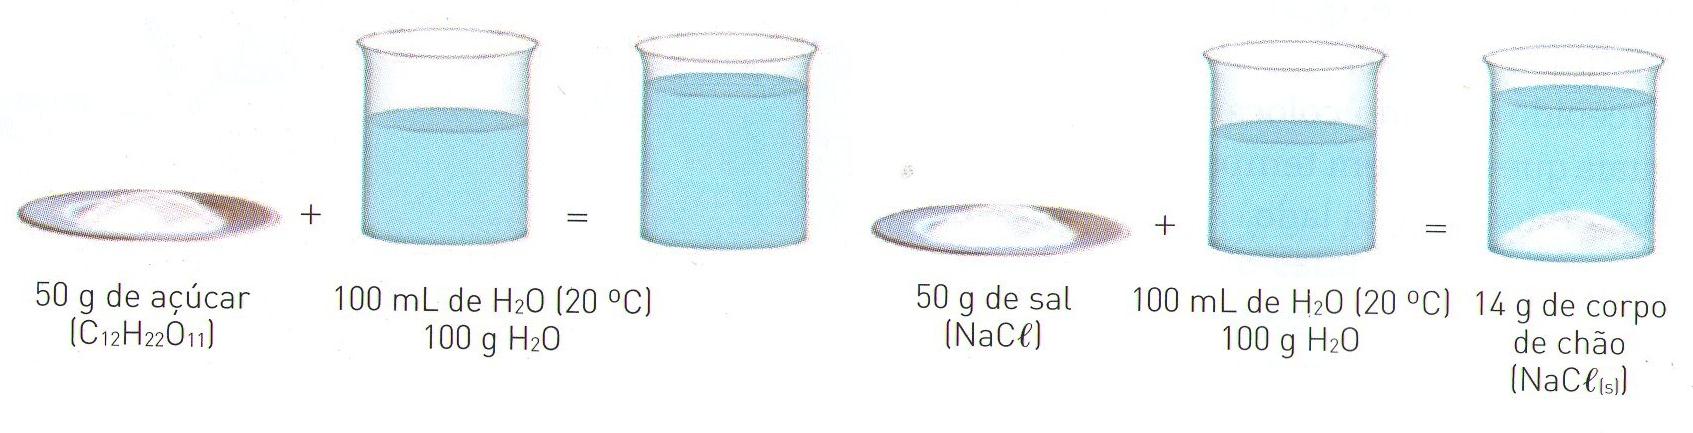 Soluções Químicas Solubilidade: É a capacidade de uma substância, ou seja, de um soluto, de se dissolver completamente em um solvente, resultando em uma mistura homogênea (Solução).